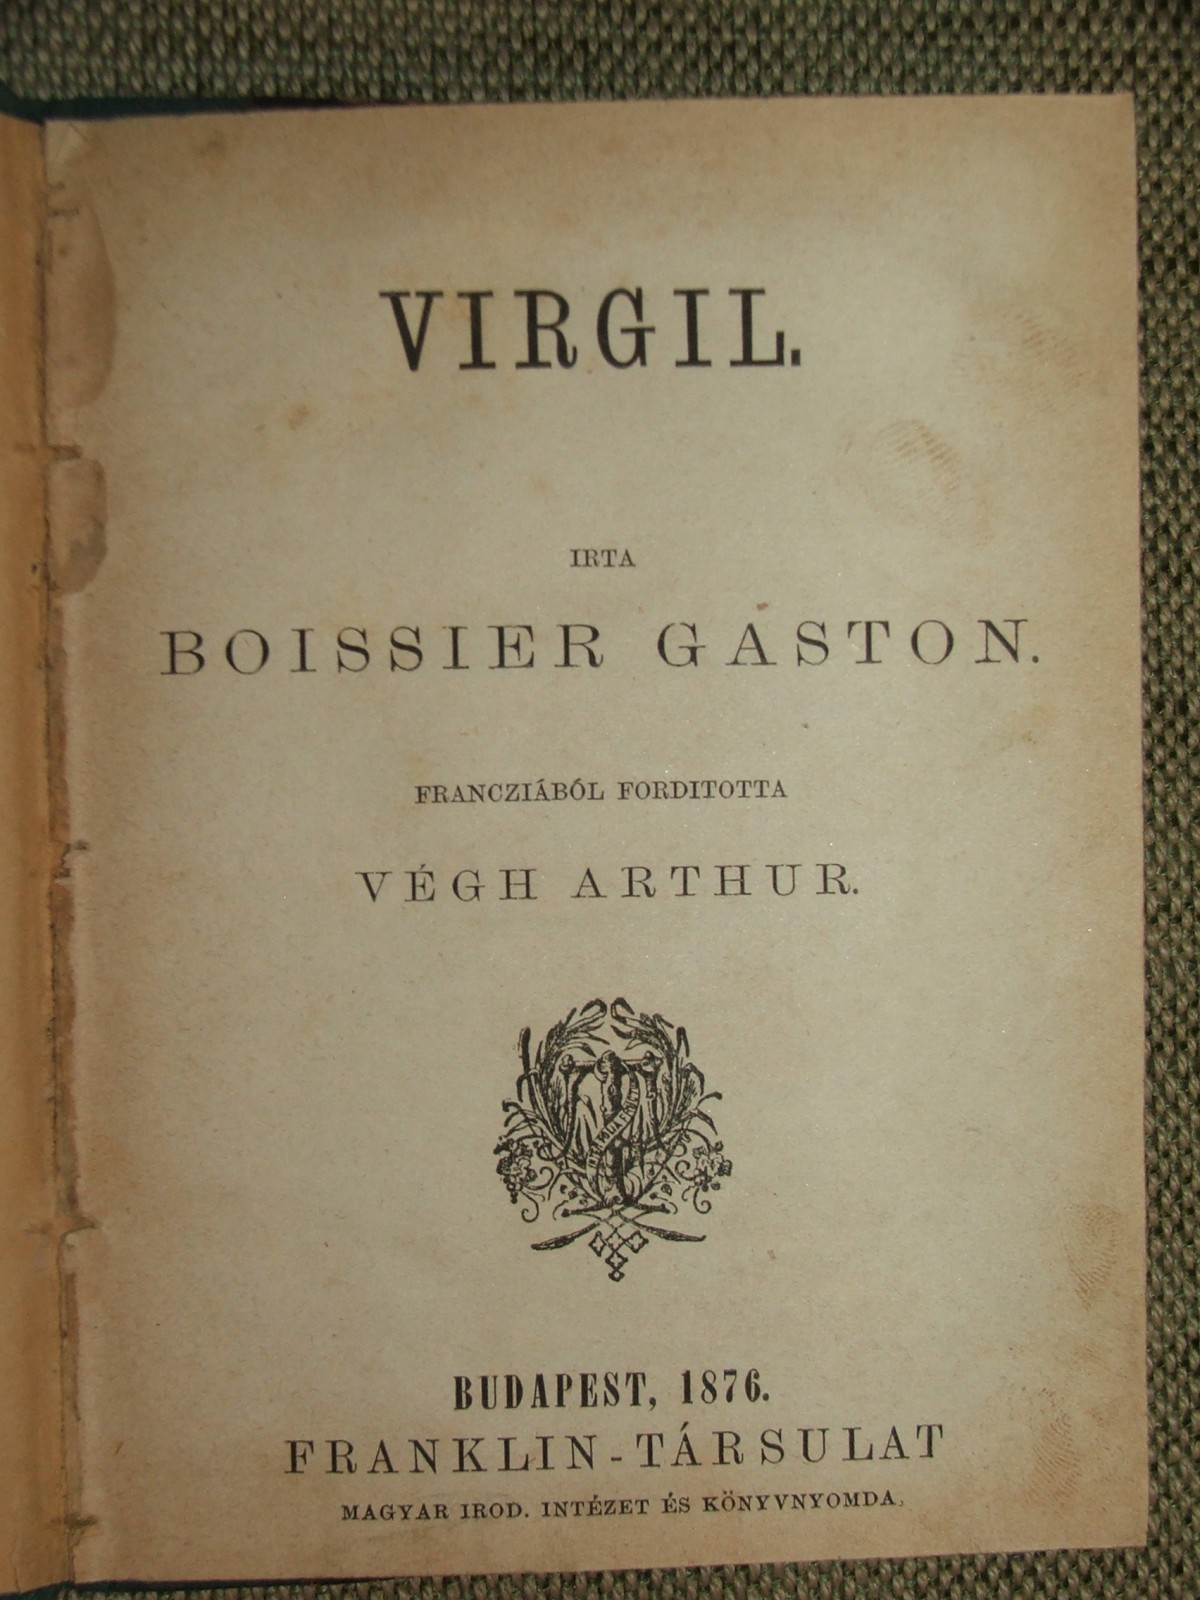 BOISSIER, Gaston: Virgil